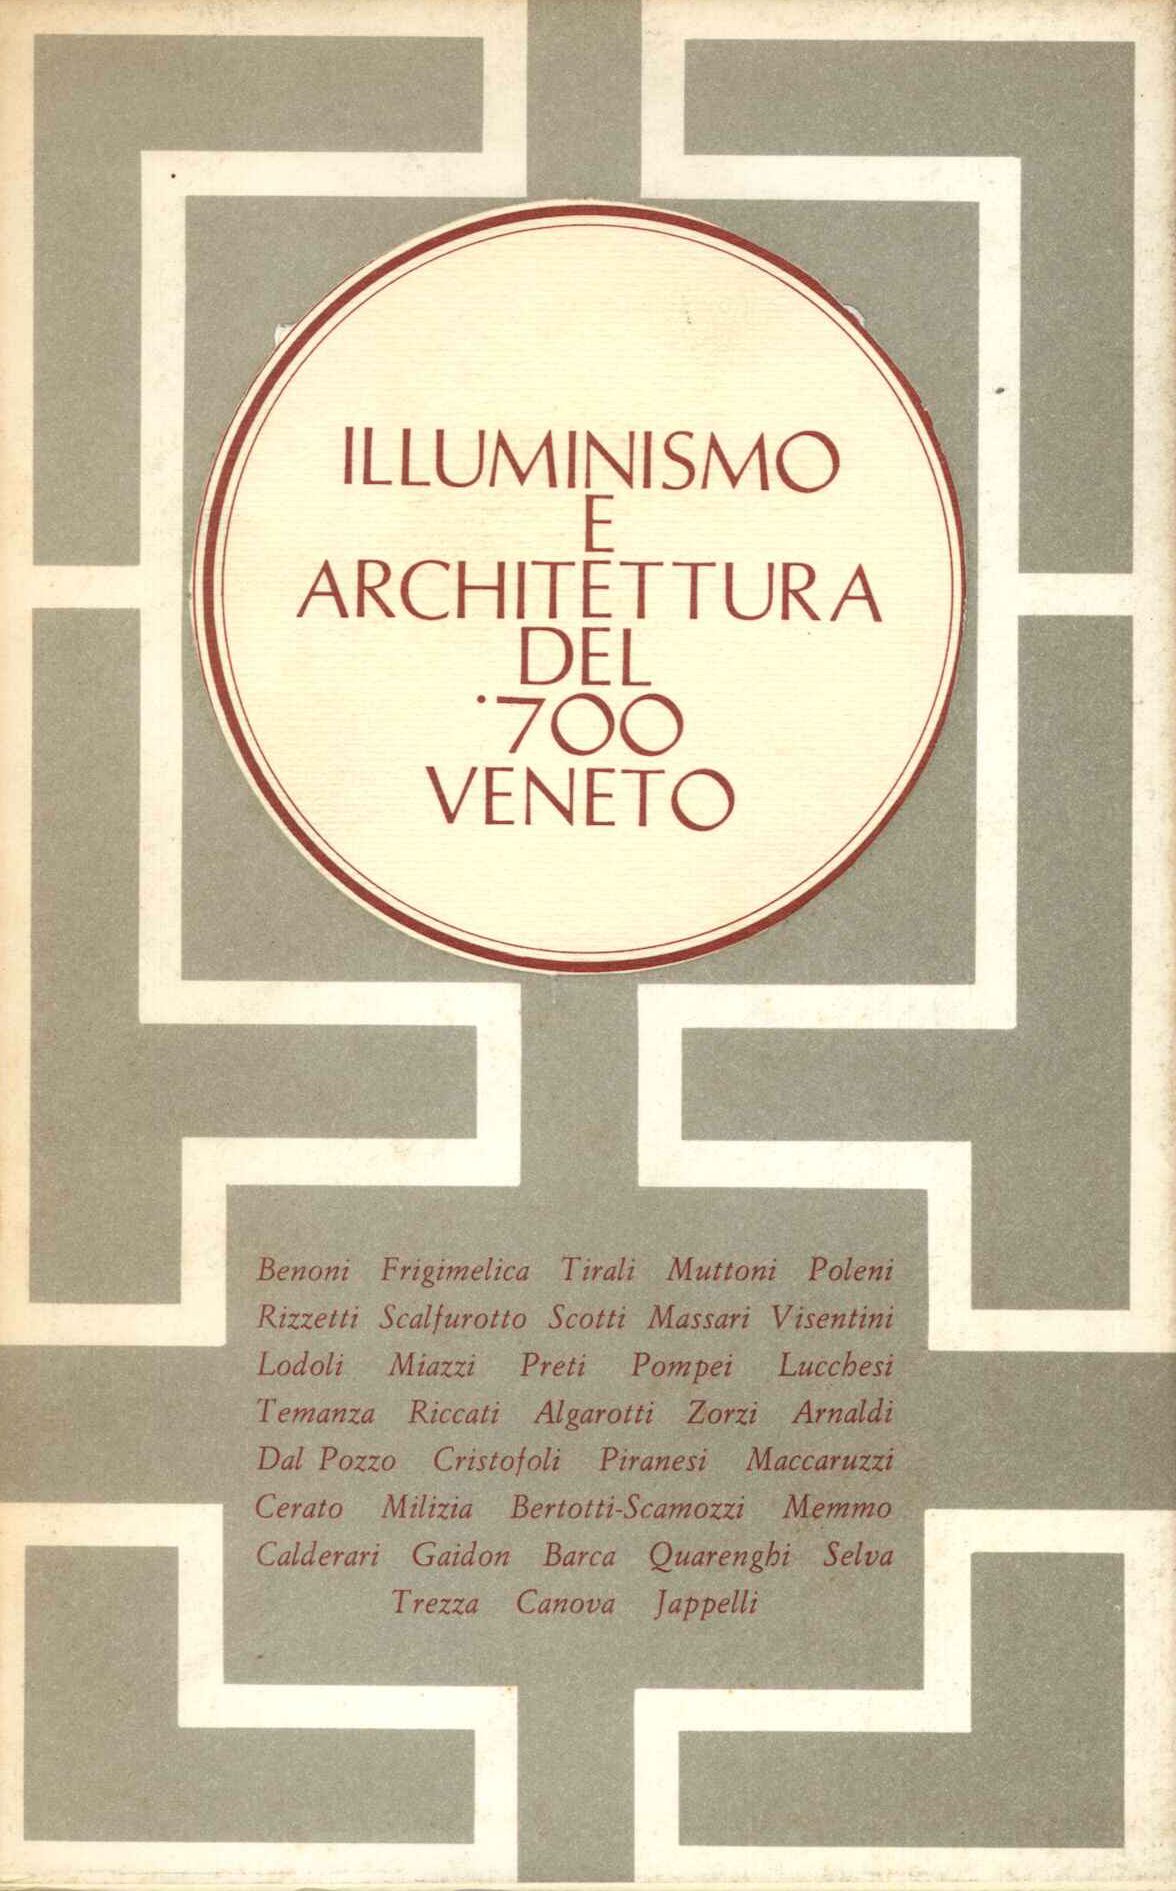 ILLUMINISMO E ARCHITETTURA del '700 Veneto. Catalogo della mostr